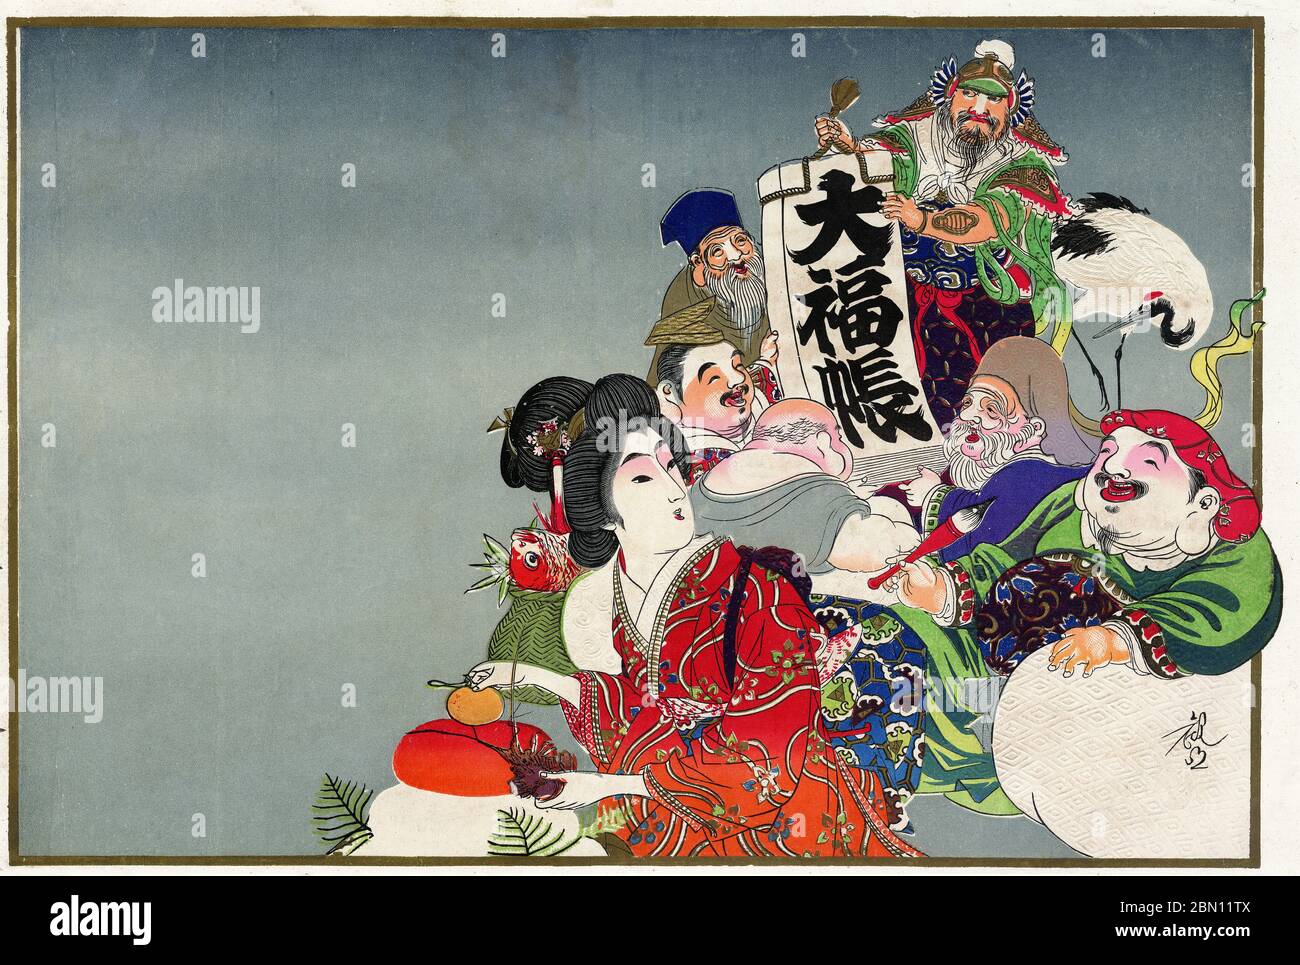 [ 1910 Japan - Japanische Glücksgötter ] - Hikifuda (引札), ein Print, der von lokalen Geschäften als Werbeflyer verwendet wird. Sie waren von den 1800er bis in die 1920er Jahre populär. Dieser Druck zeigt die traditionellen Sieben Glücksgötter (七福神, Shichi Fukujin), von denen angenommen wurde, dass sie den Menschen Glück geben. Die Frau im roten Kimono, die Neujahrsdekorationen ausstellt, ist höchstwahrscheinlich Benzaiten (弁才天 oder 弁財天). 20. Jahrhundert Vintage Werbung Flyer. Stockfoto